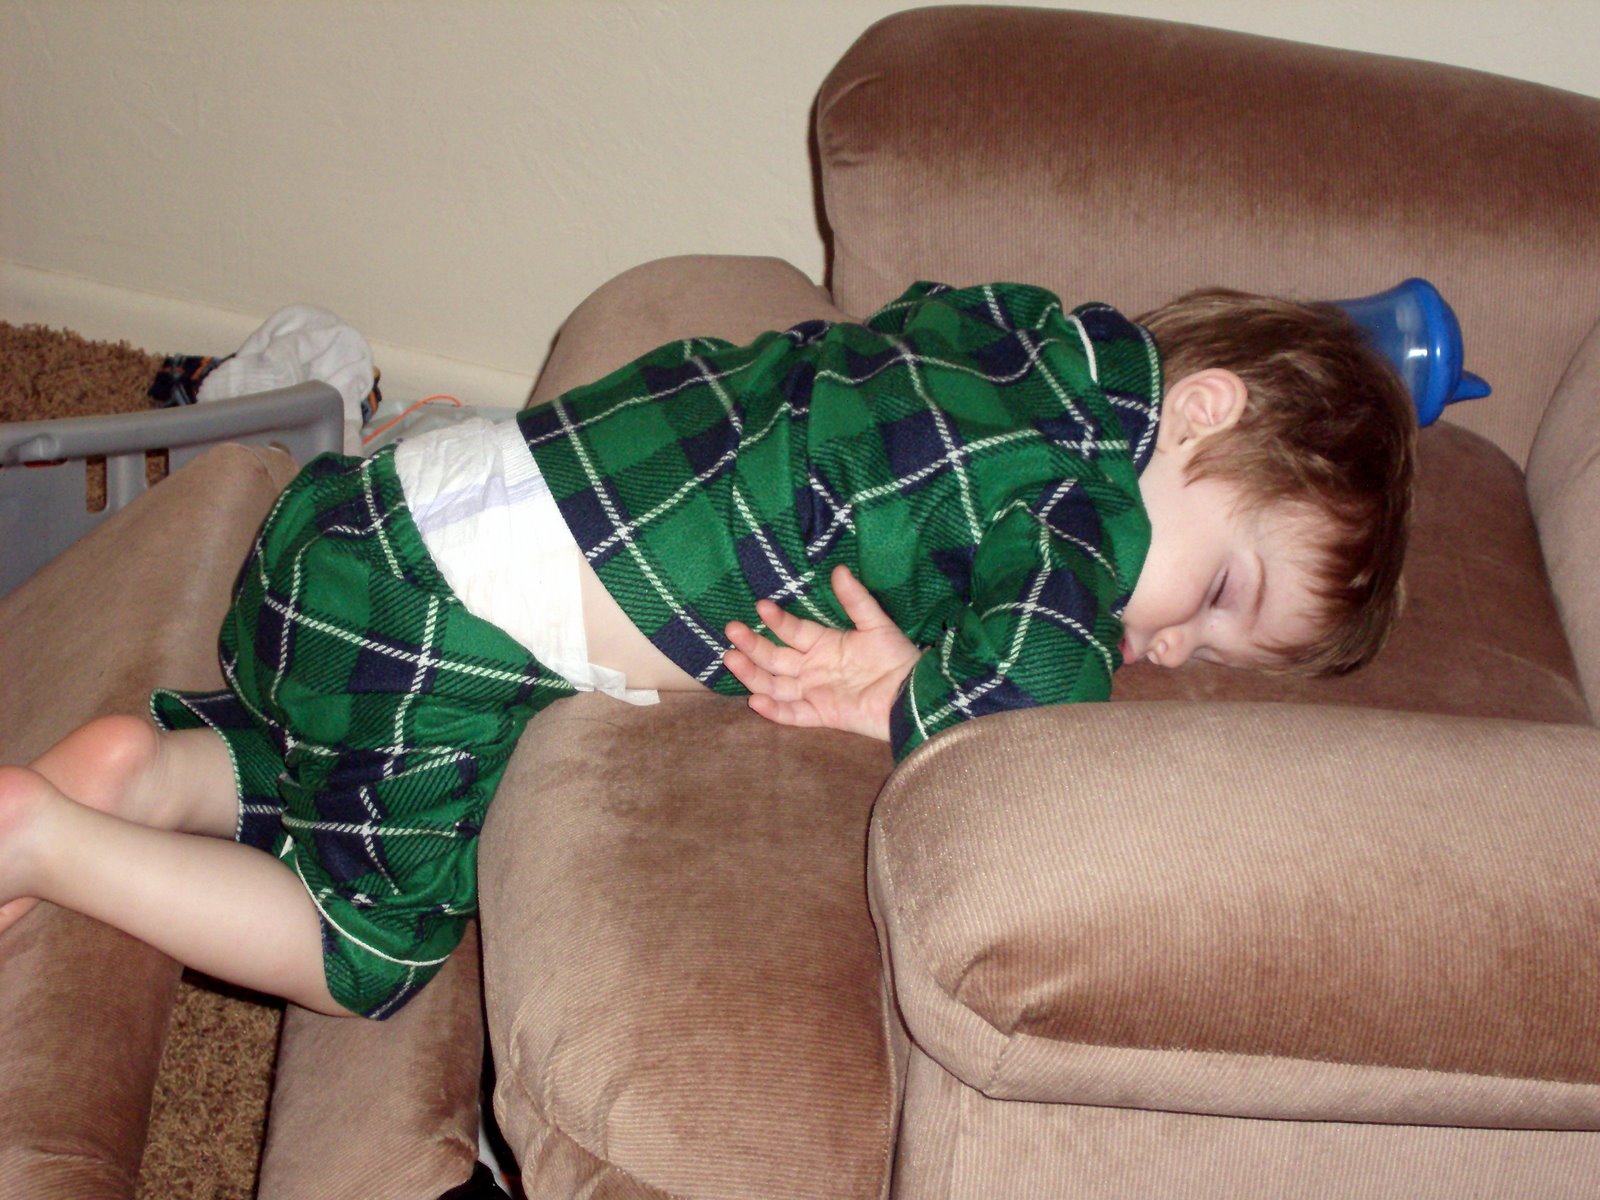 [Carter+fell+asleep+awkward+on+chair.jpg]